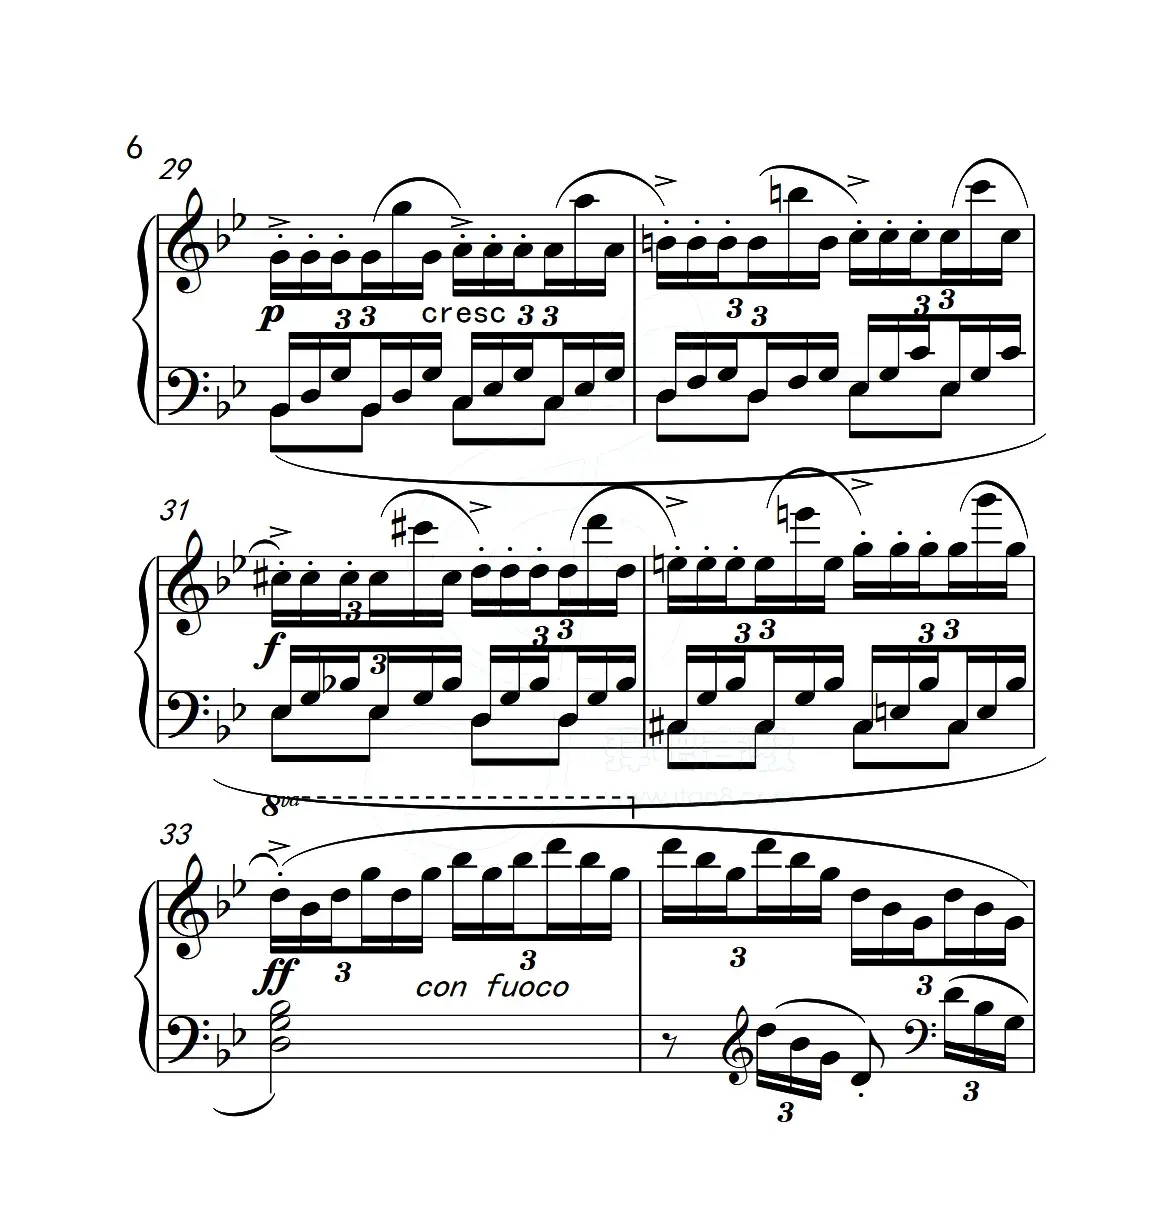 第五级A组 练习曲（中国音乐学院钢琴考级作品1~6级）